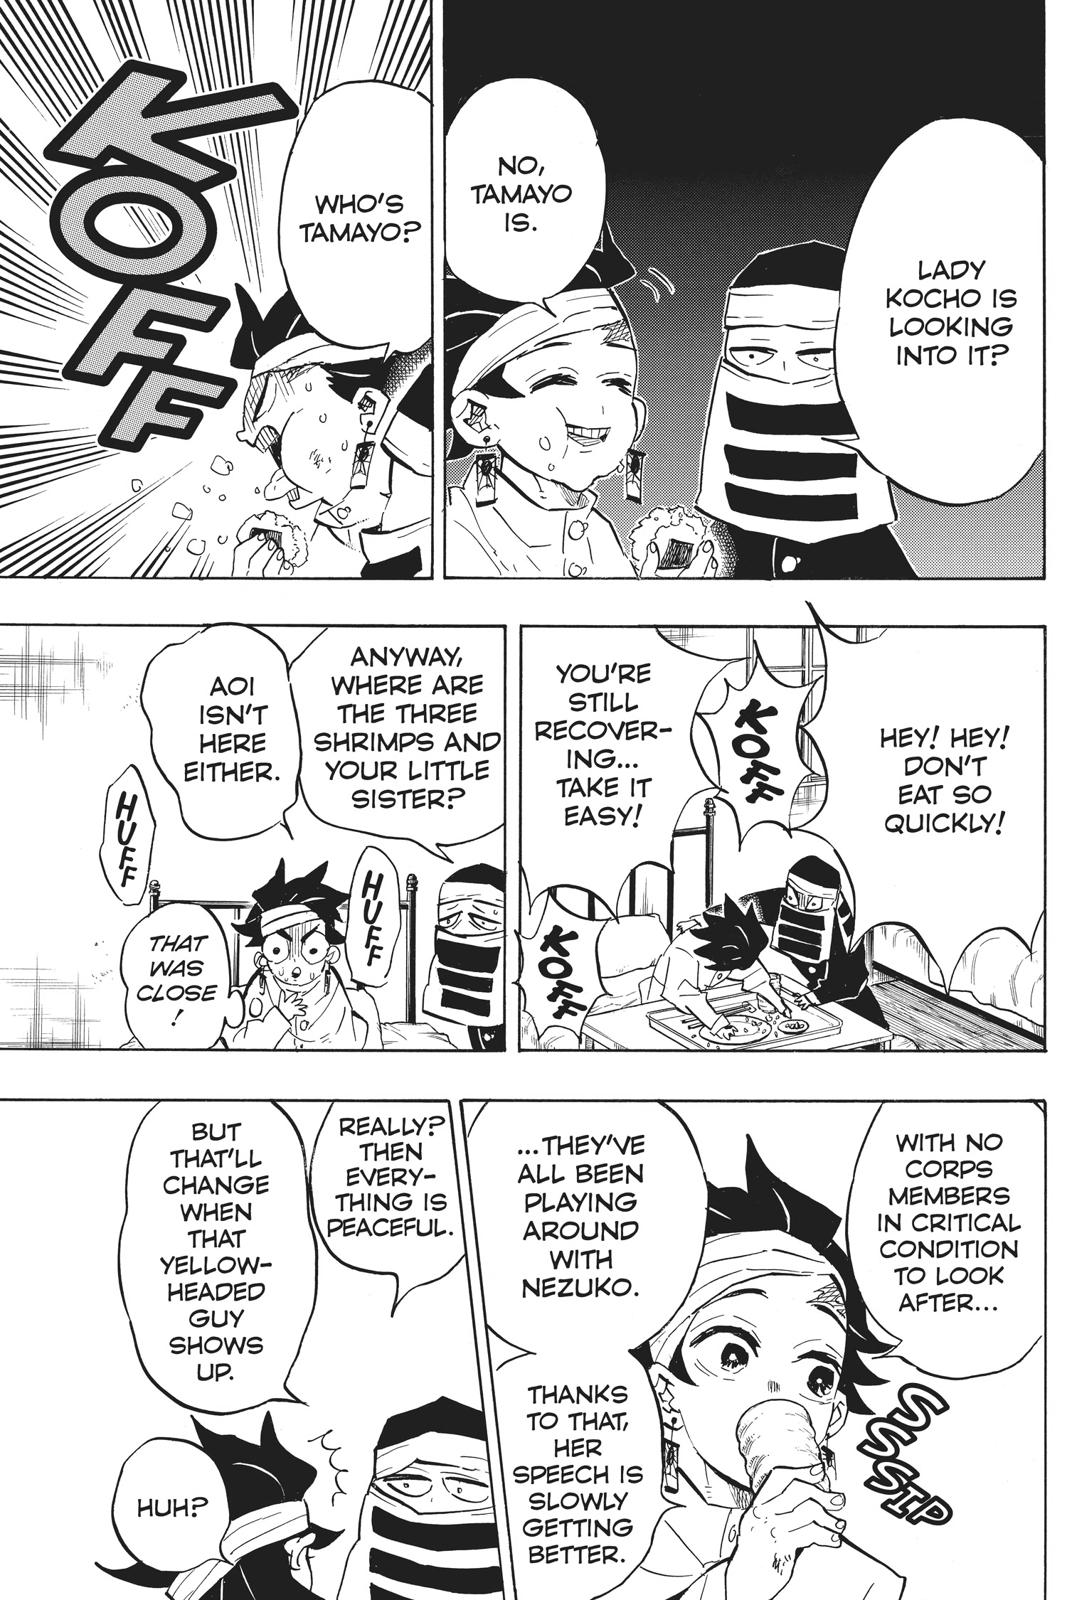 Demon Slayer Manga Manga Chapter - 128 - image 5